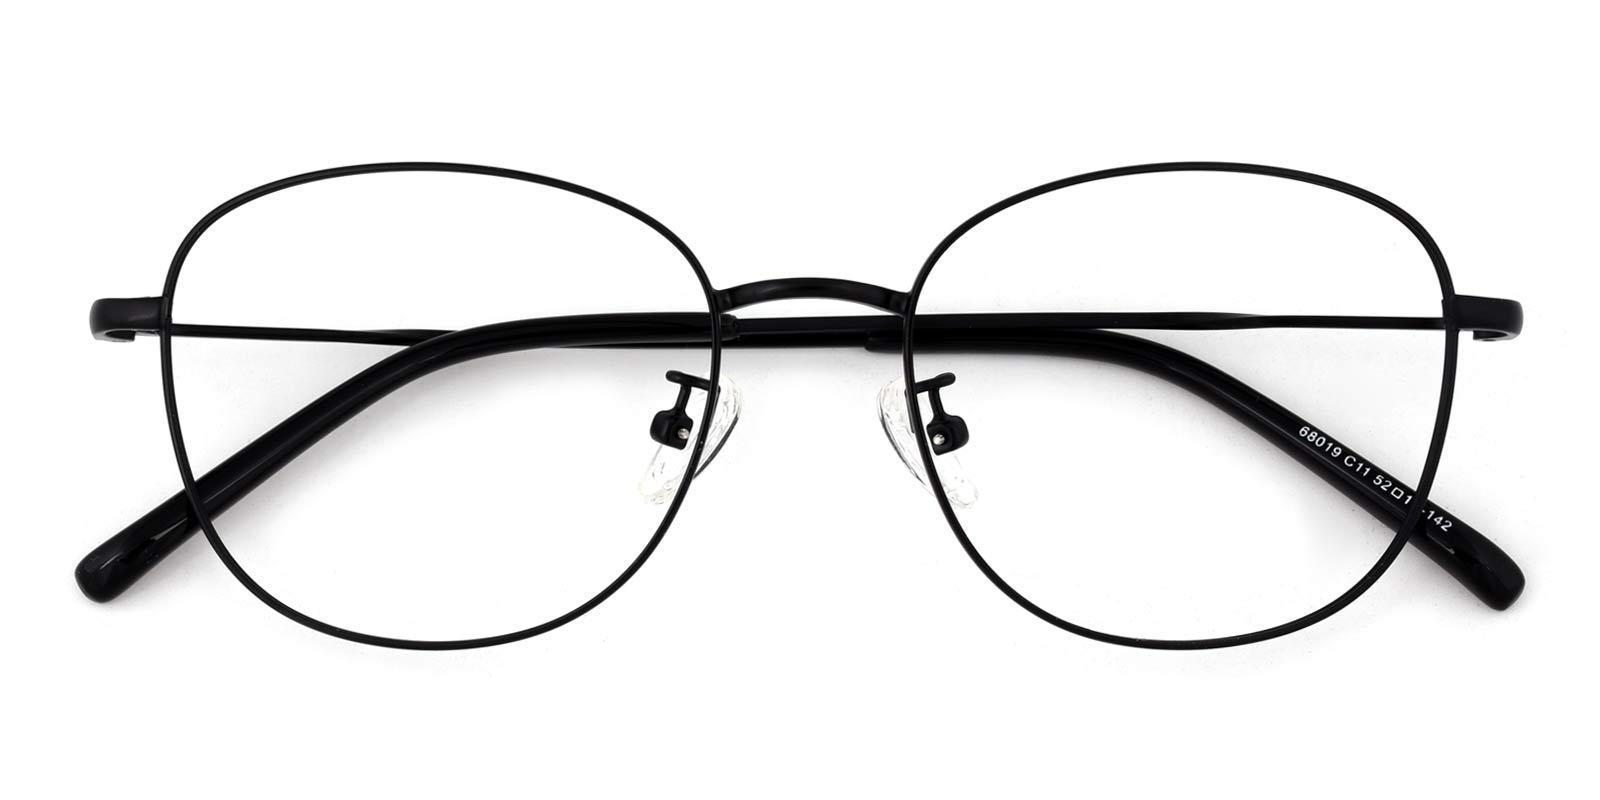 Wendy-Black-Cat / Round-Metal-Eyeglasses-detail